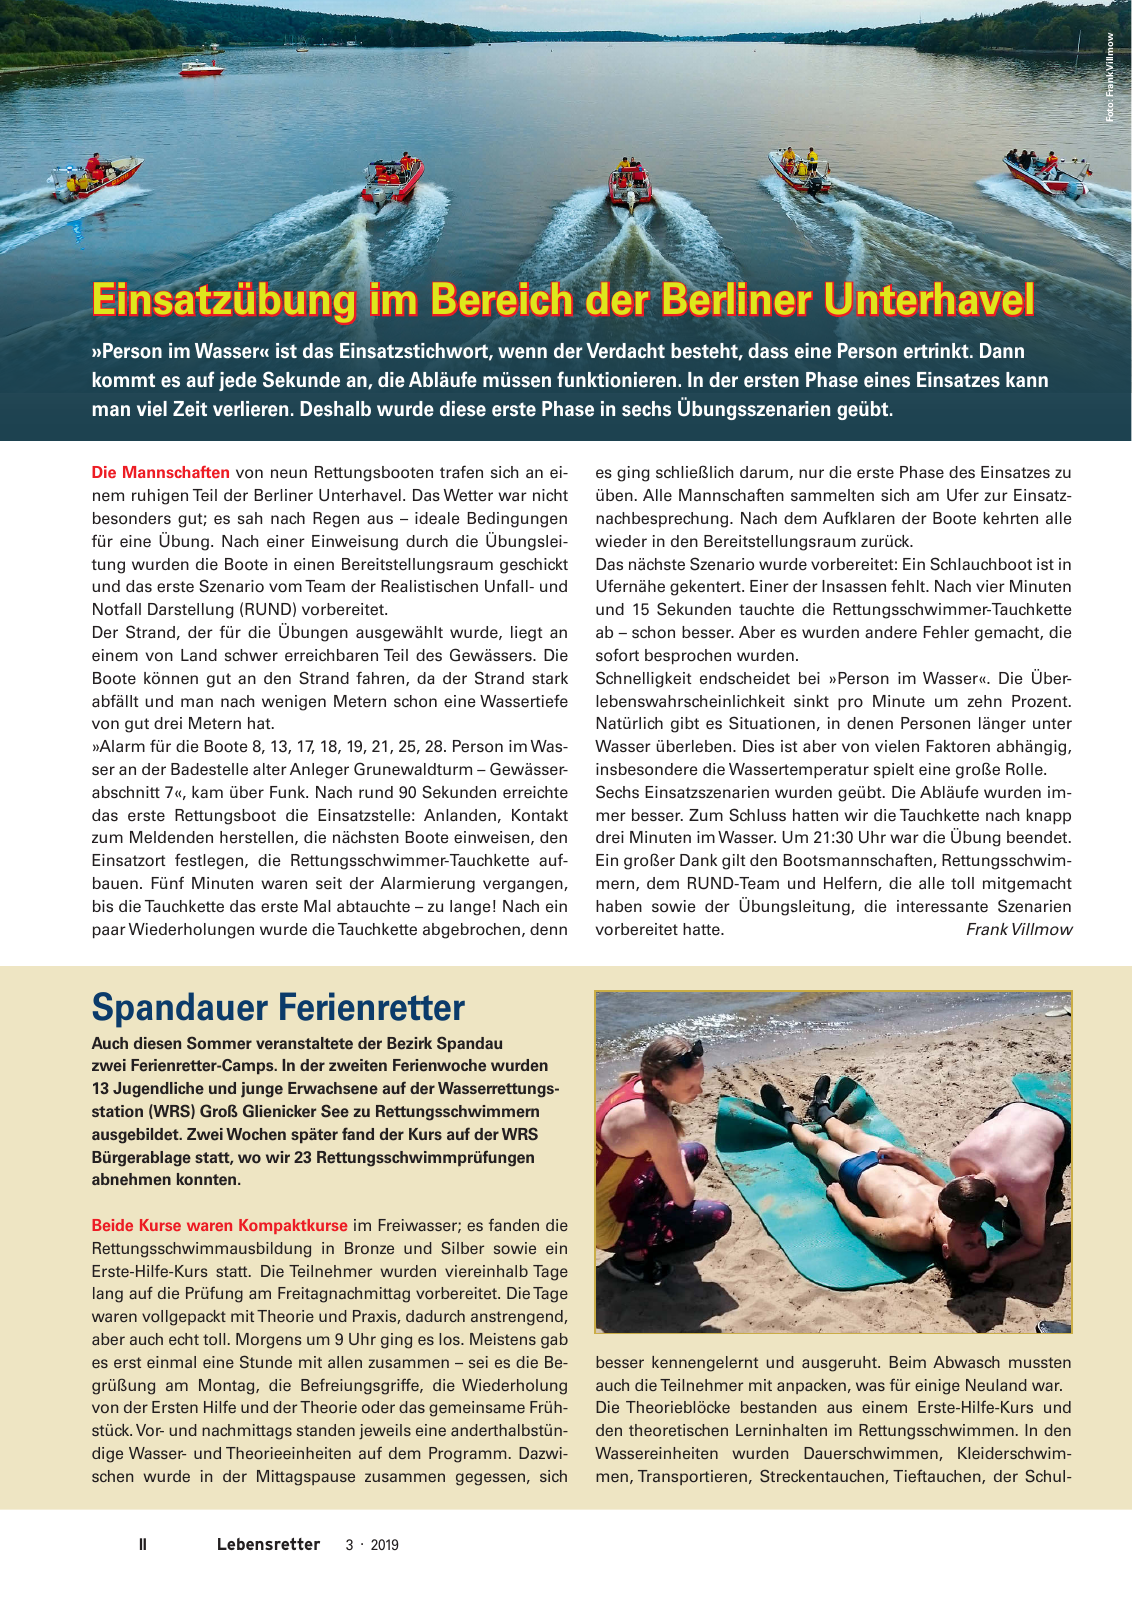 Vorschau Lebensretter 3/2019 - Berlin Regionalausgabe Seite 4